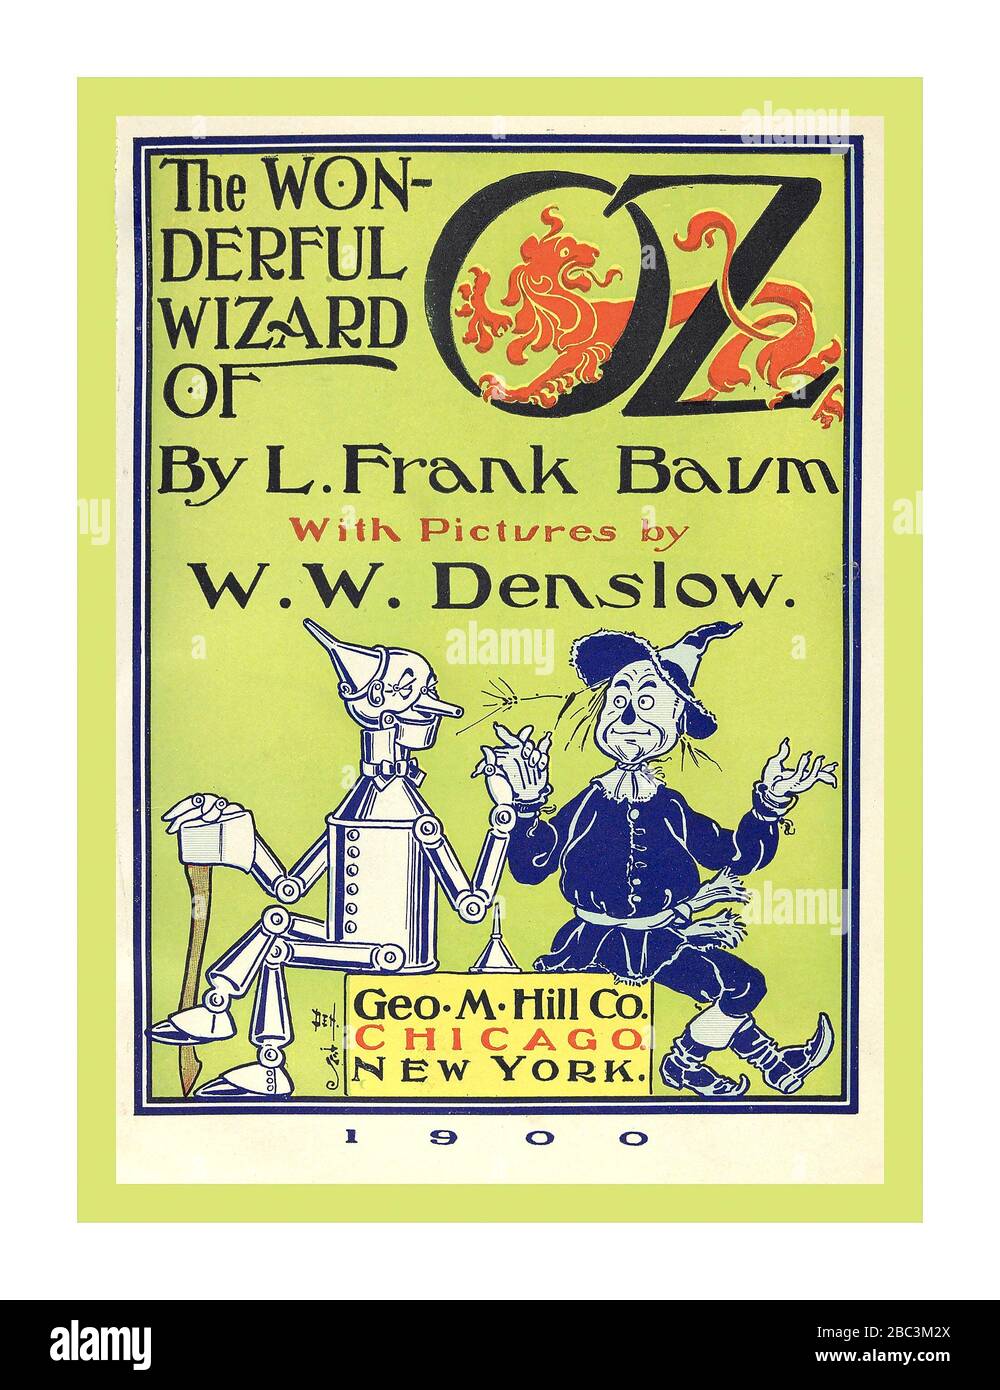 WIZARD OF OZ copertina interna del libro storico originale del 1900 ‘The Wonderful Wizard of Oz’ dello scrittore L. Frank Baum, (Lyman Frank), 1856-1919. Illustrazione di W. W.Denslow, (William Wallace), 1856-1915, pubblicato Chicago ; New York : G.M. Hill Co. c1900 Foto Stock